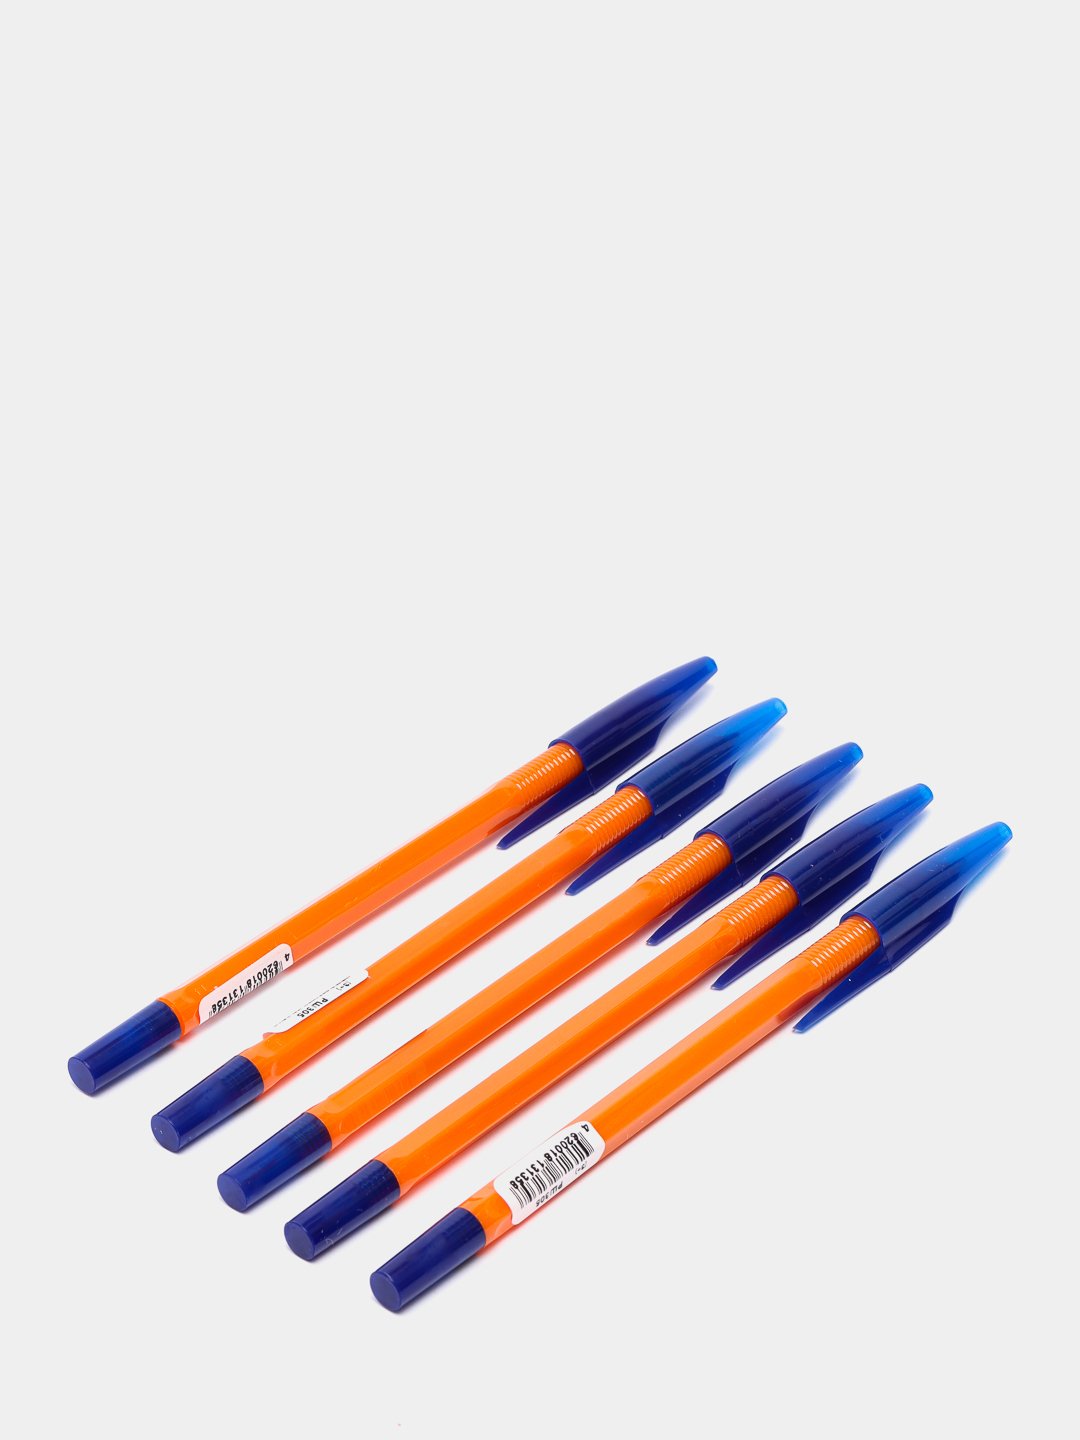 Ручка синяя шариковая 4 640026 715524. Ручка шариковая синяя (толщина линии 0,5 мм). Ручка шариковая синяя 0.5 мм. Ручки синие. Ручка 0.5 шариковая синяя